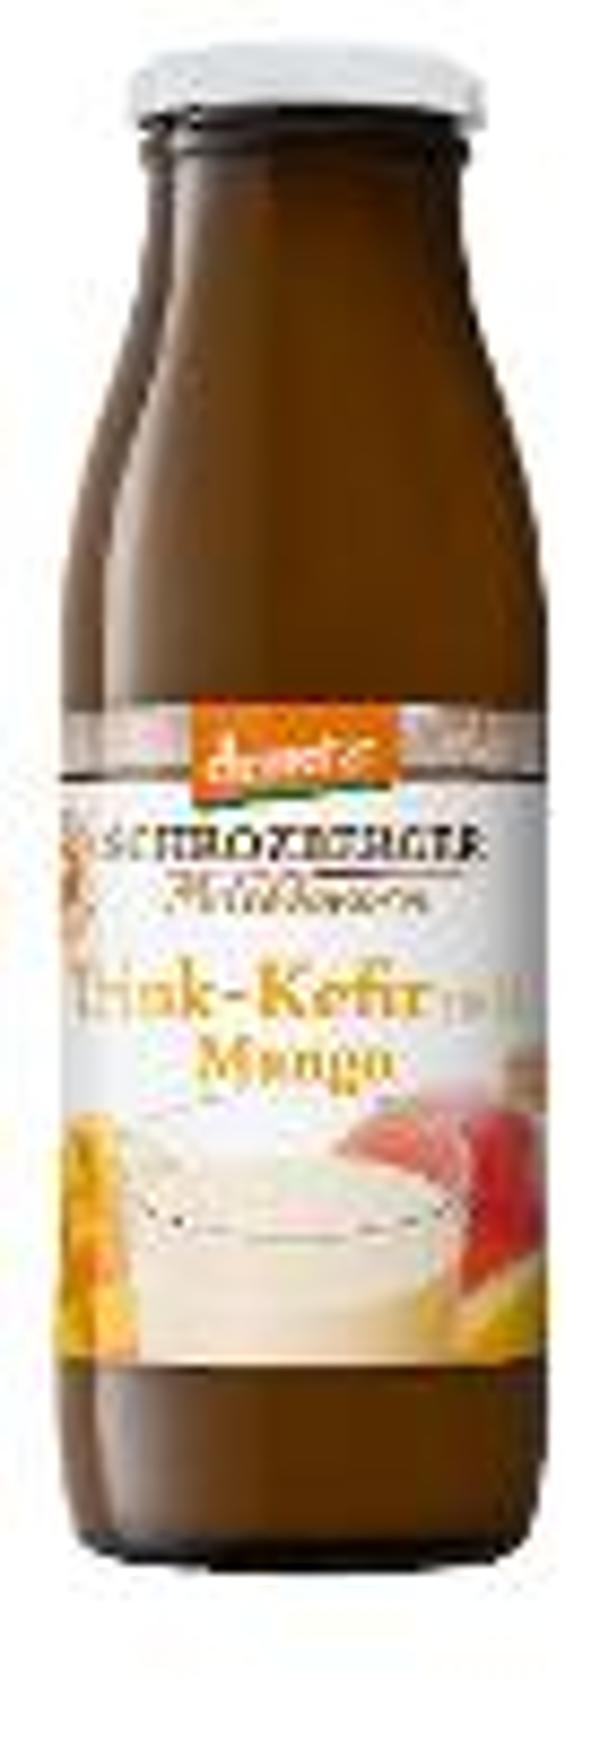 Produktfoto zu VPE Trink-Kefir Mango 6x500 ml Schrozberger Milchbauern